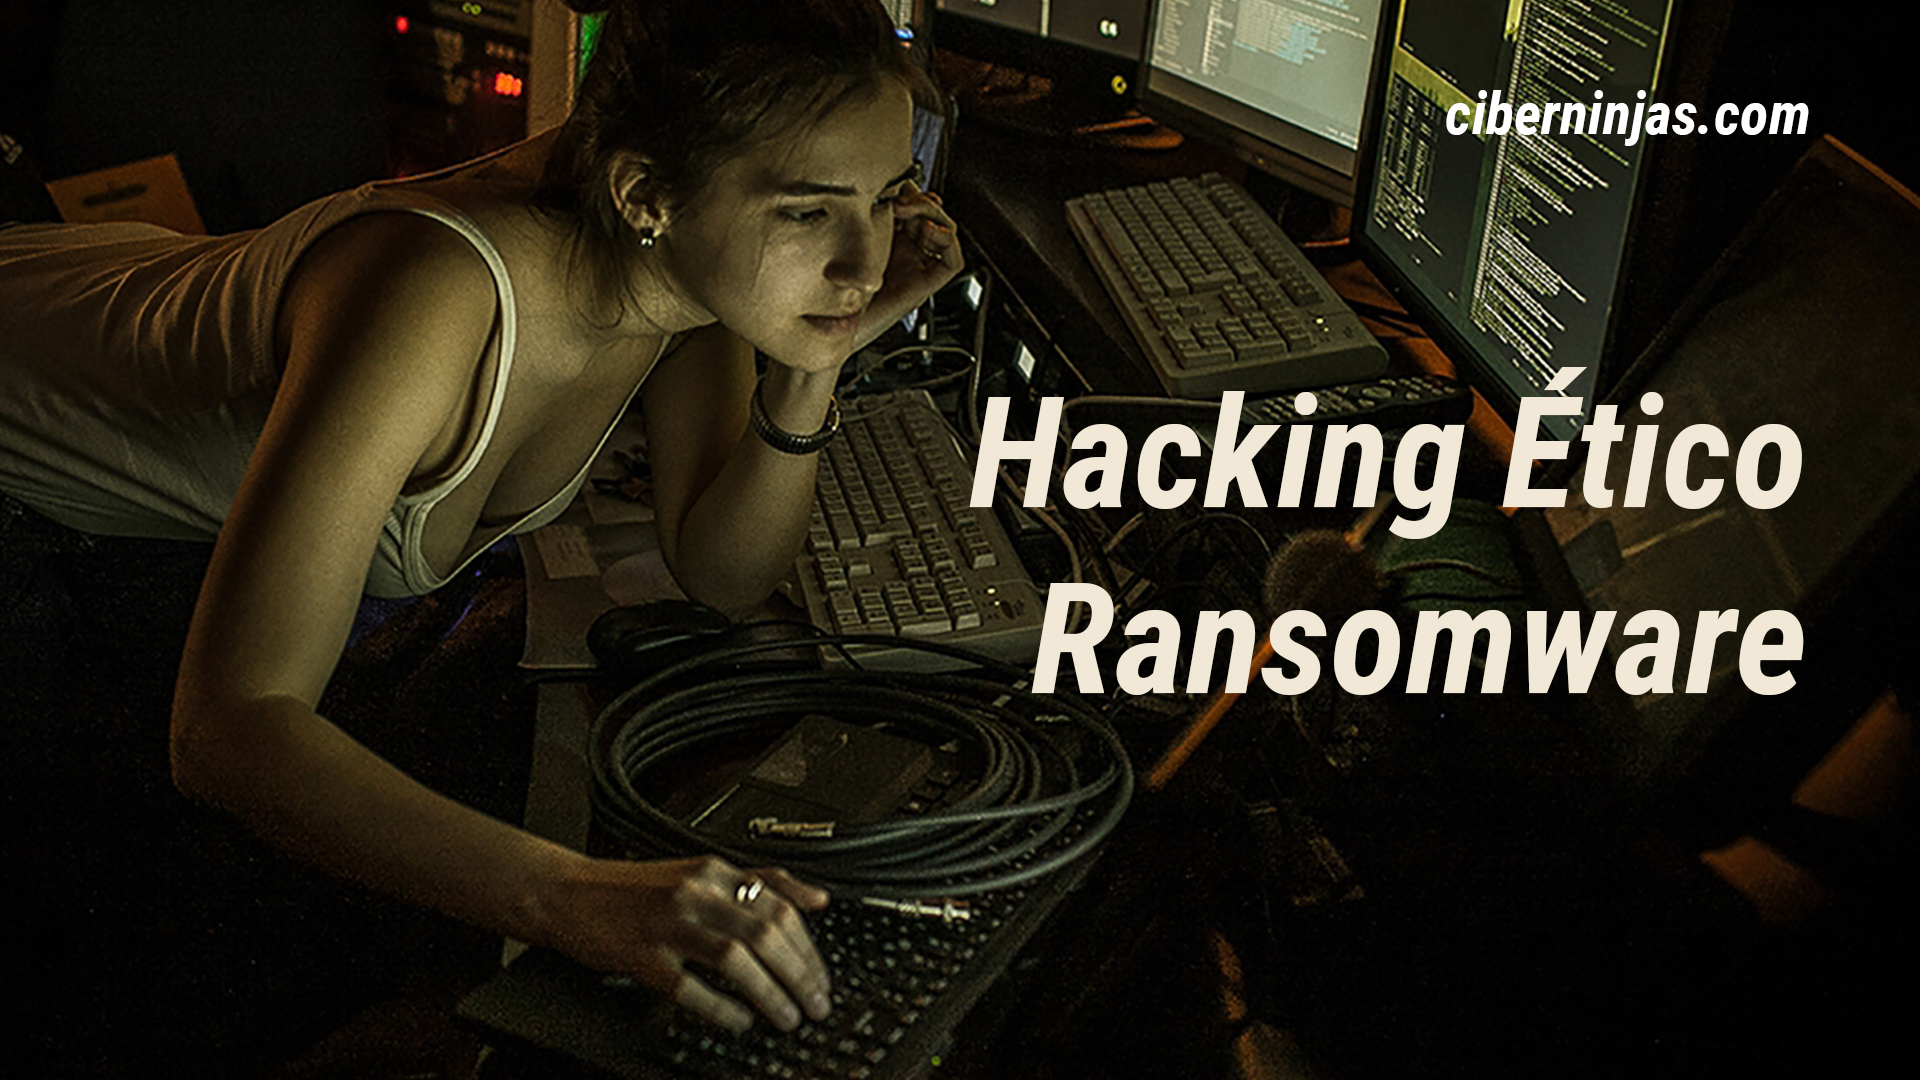 Conociendo el malware ransomware, qué es, como funciona y más